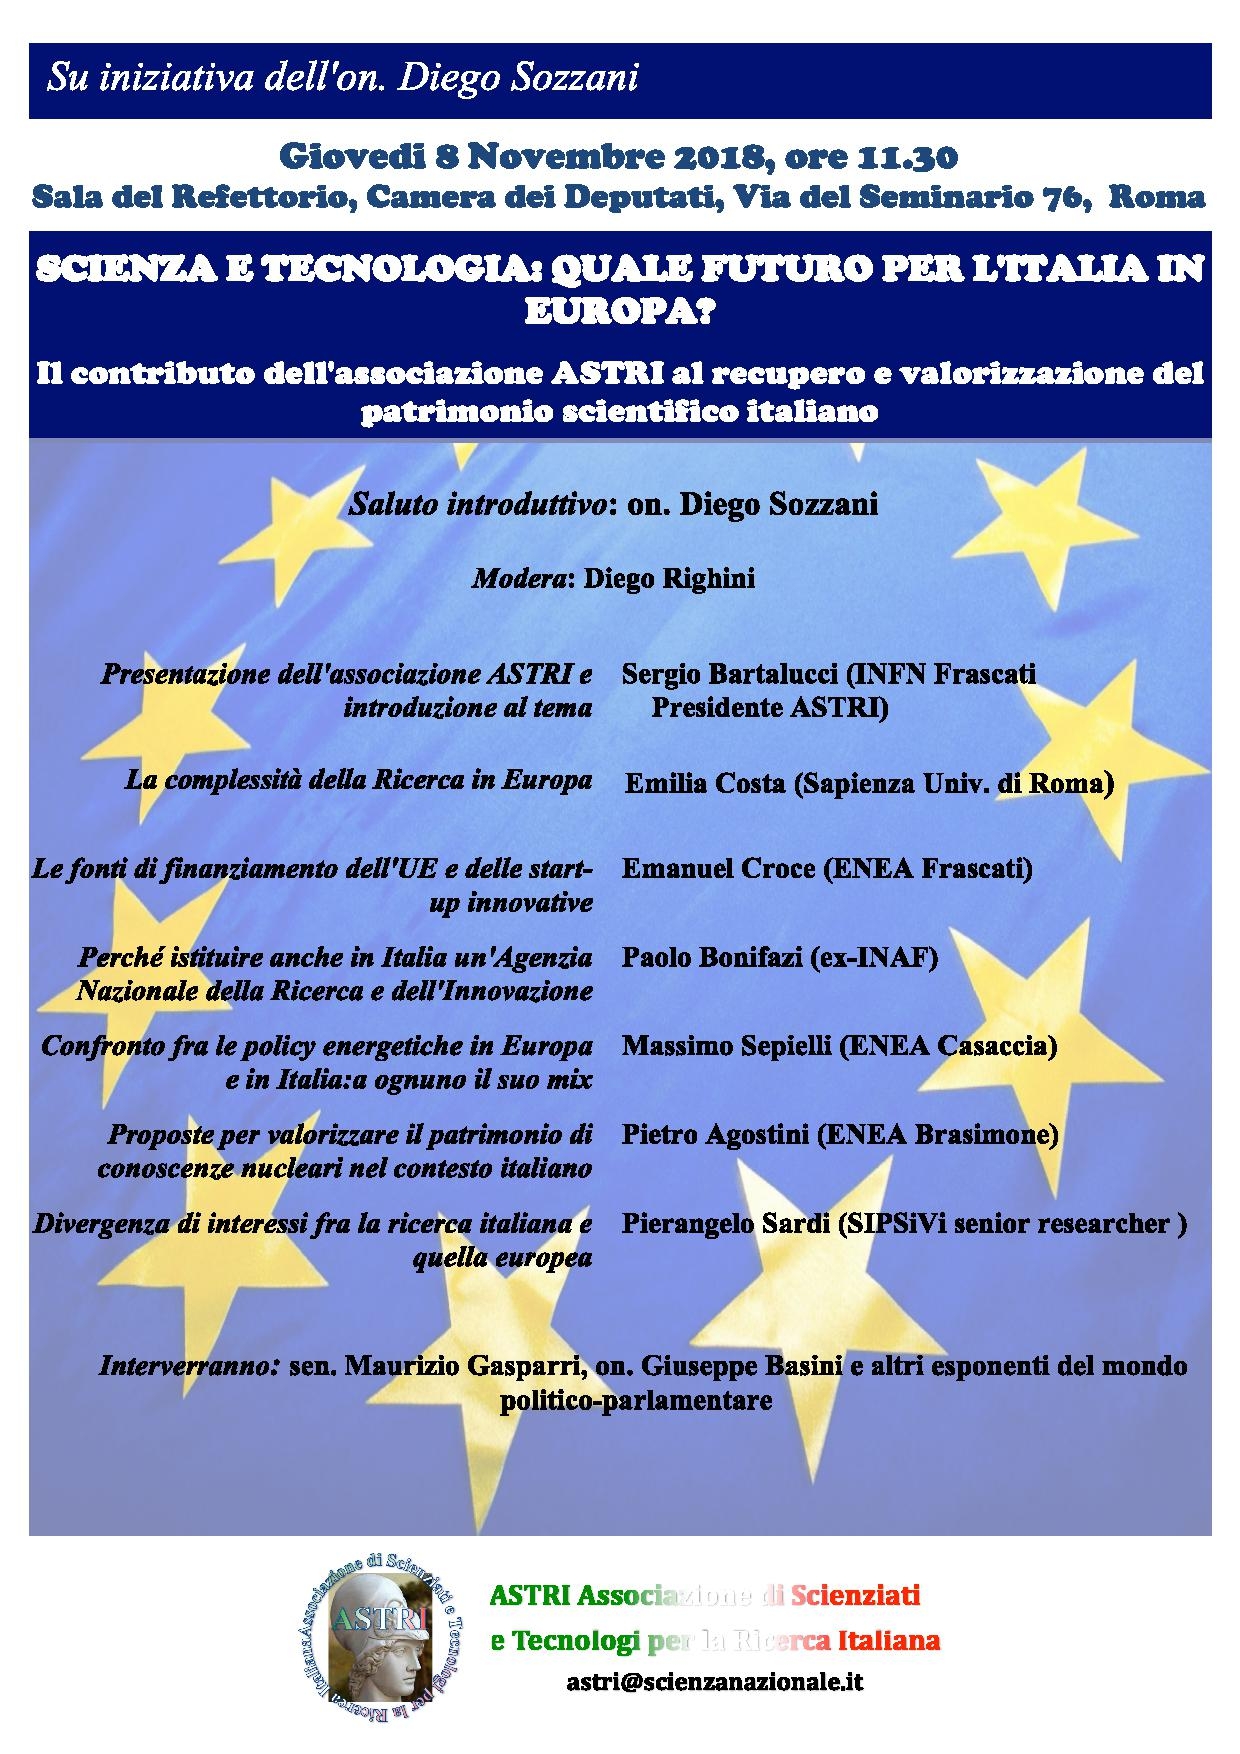 SCIENZA E TECNOLOGIA: QUALE FUTURO PER L'ITALIA IN EUROPA?